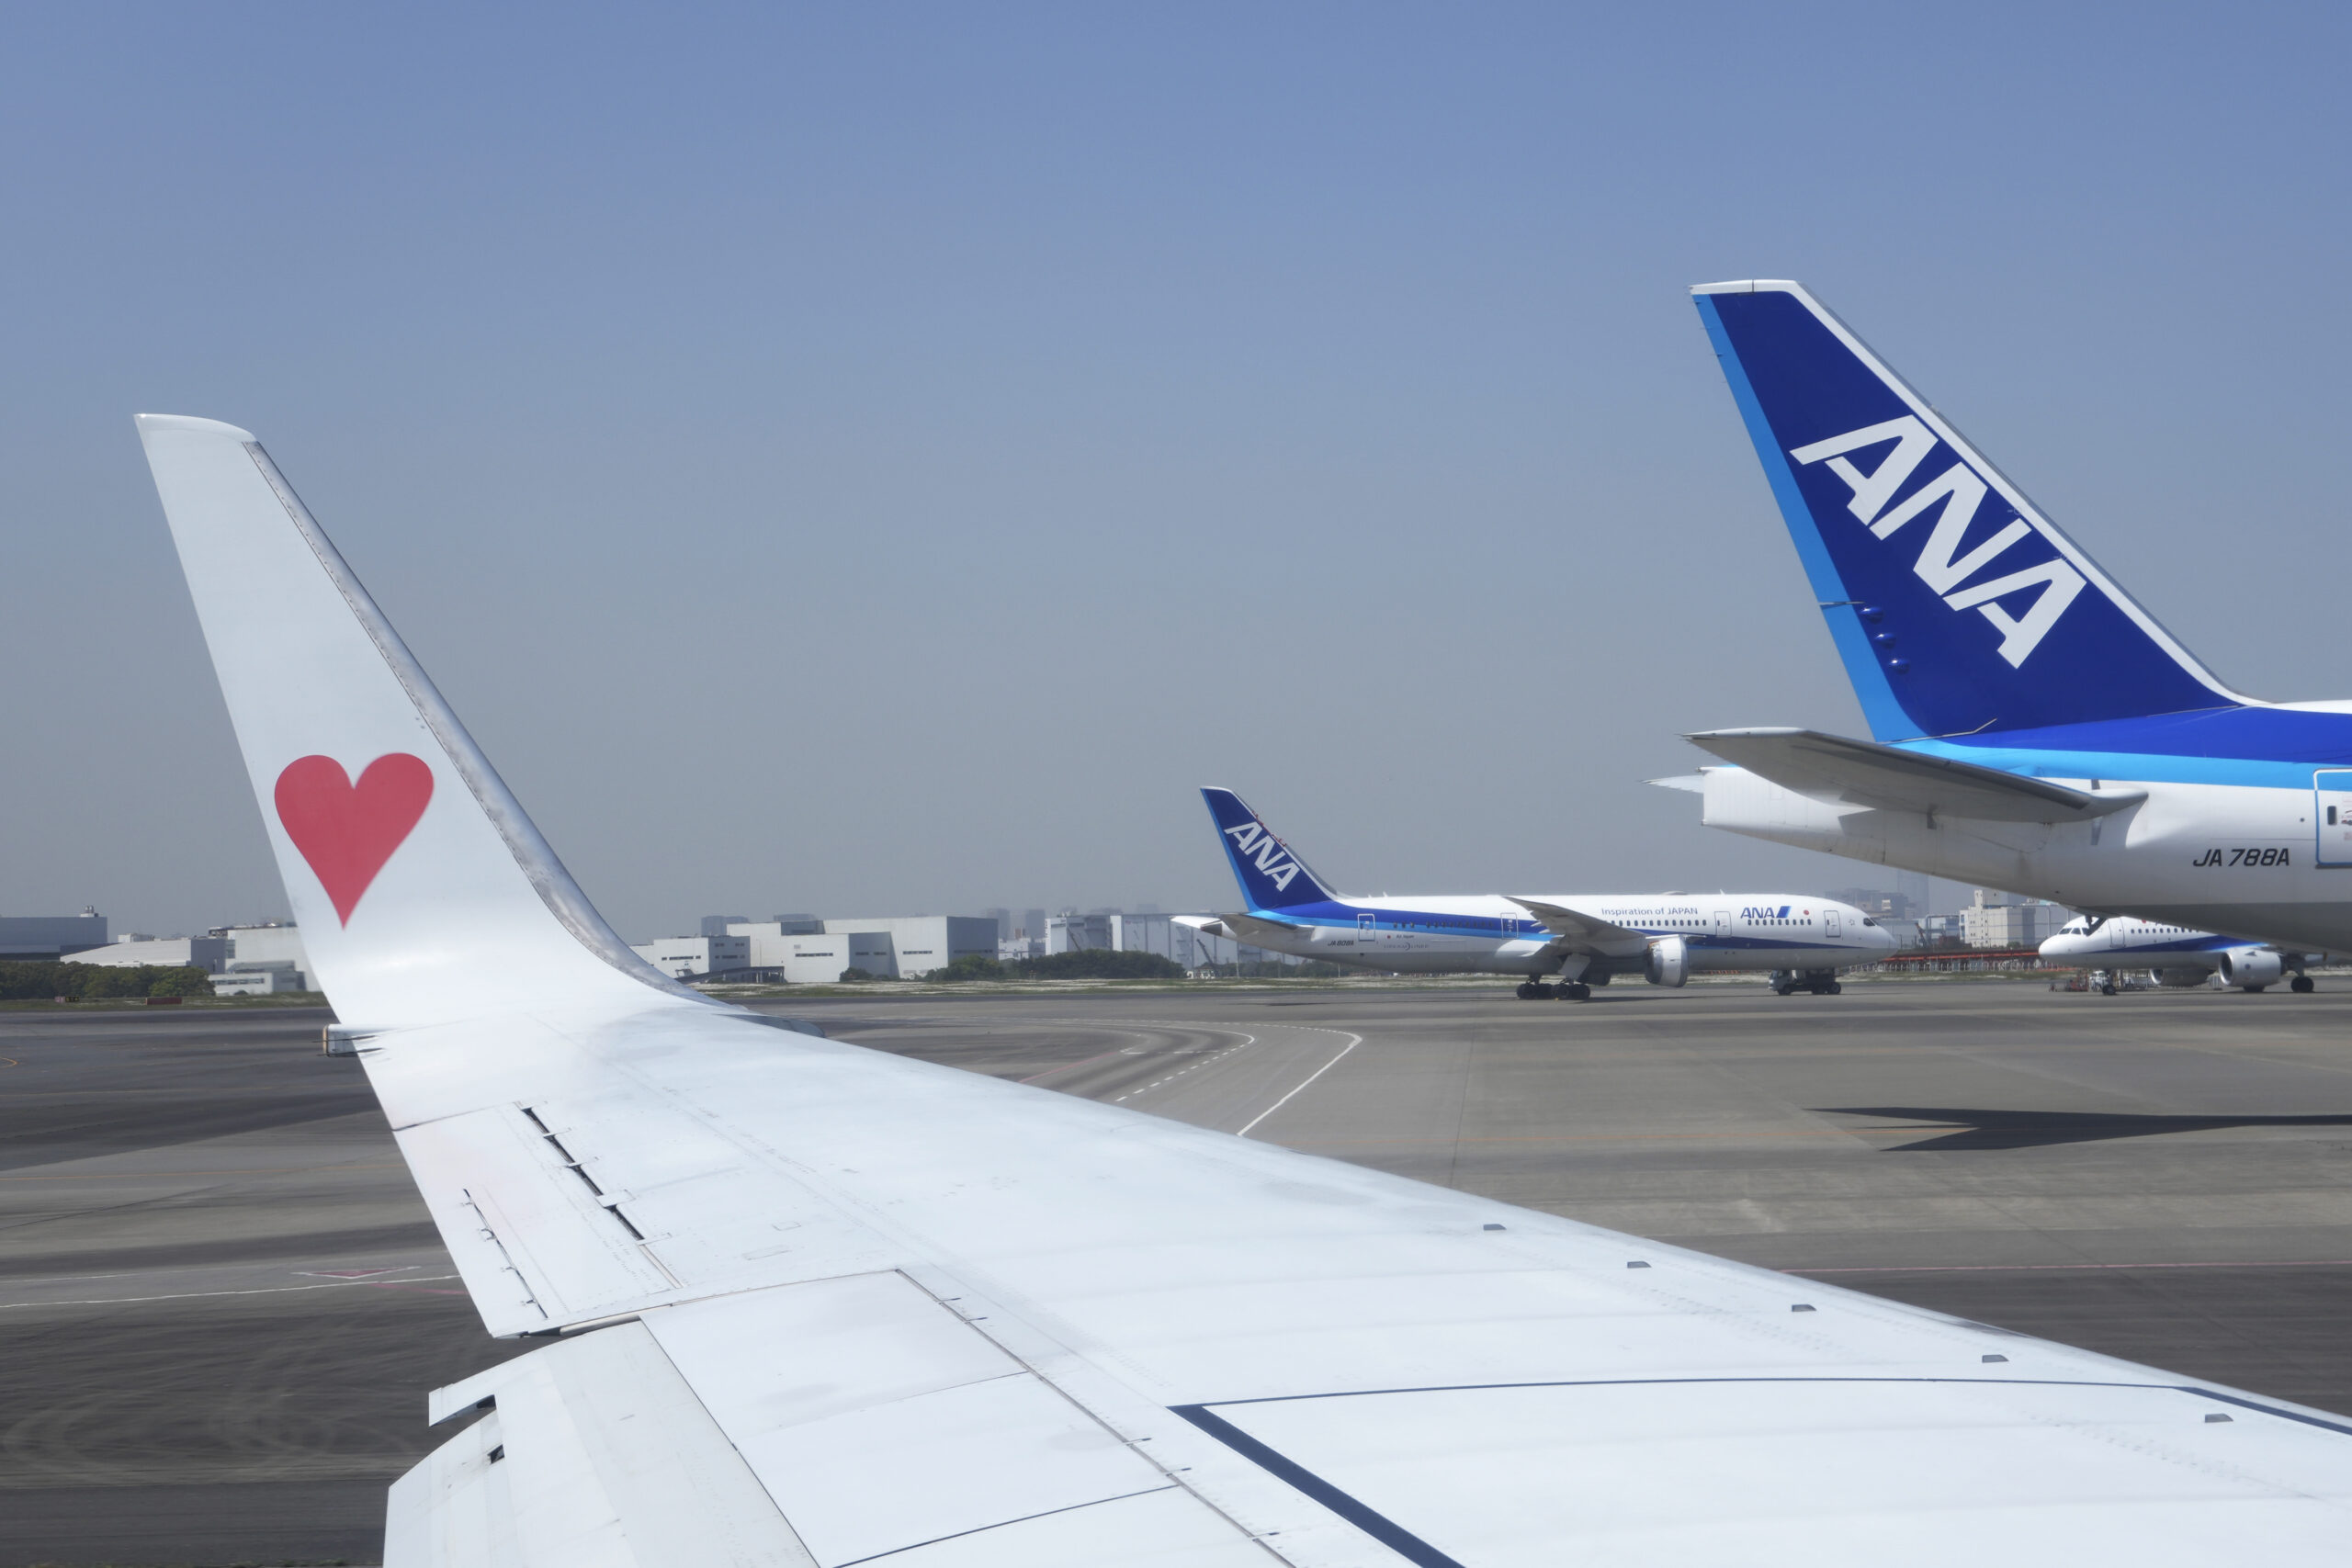 Ιαπωνία: Τα φτερά δυο επιβατικών αεροπλάνων ακούμπησαν καθώς τροχοδρομούσαν στο αεροδρόμιο του Τόκιο (φωτογραφία)